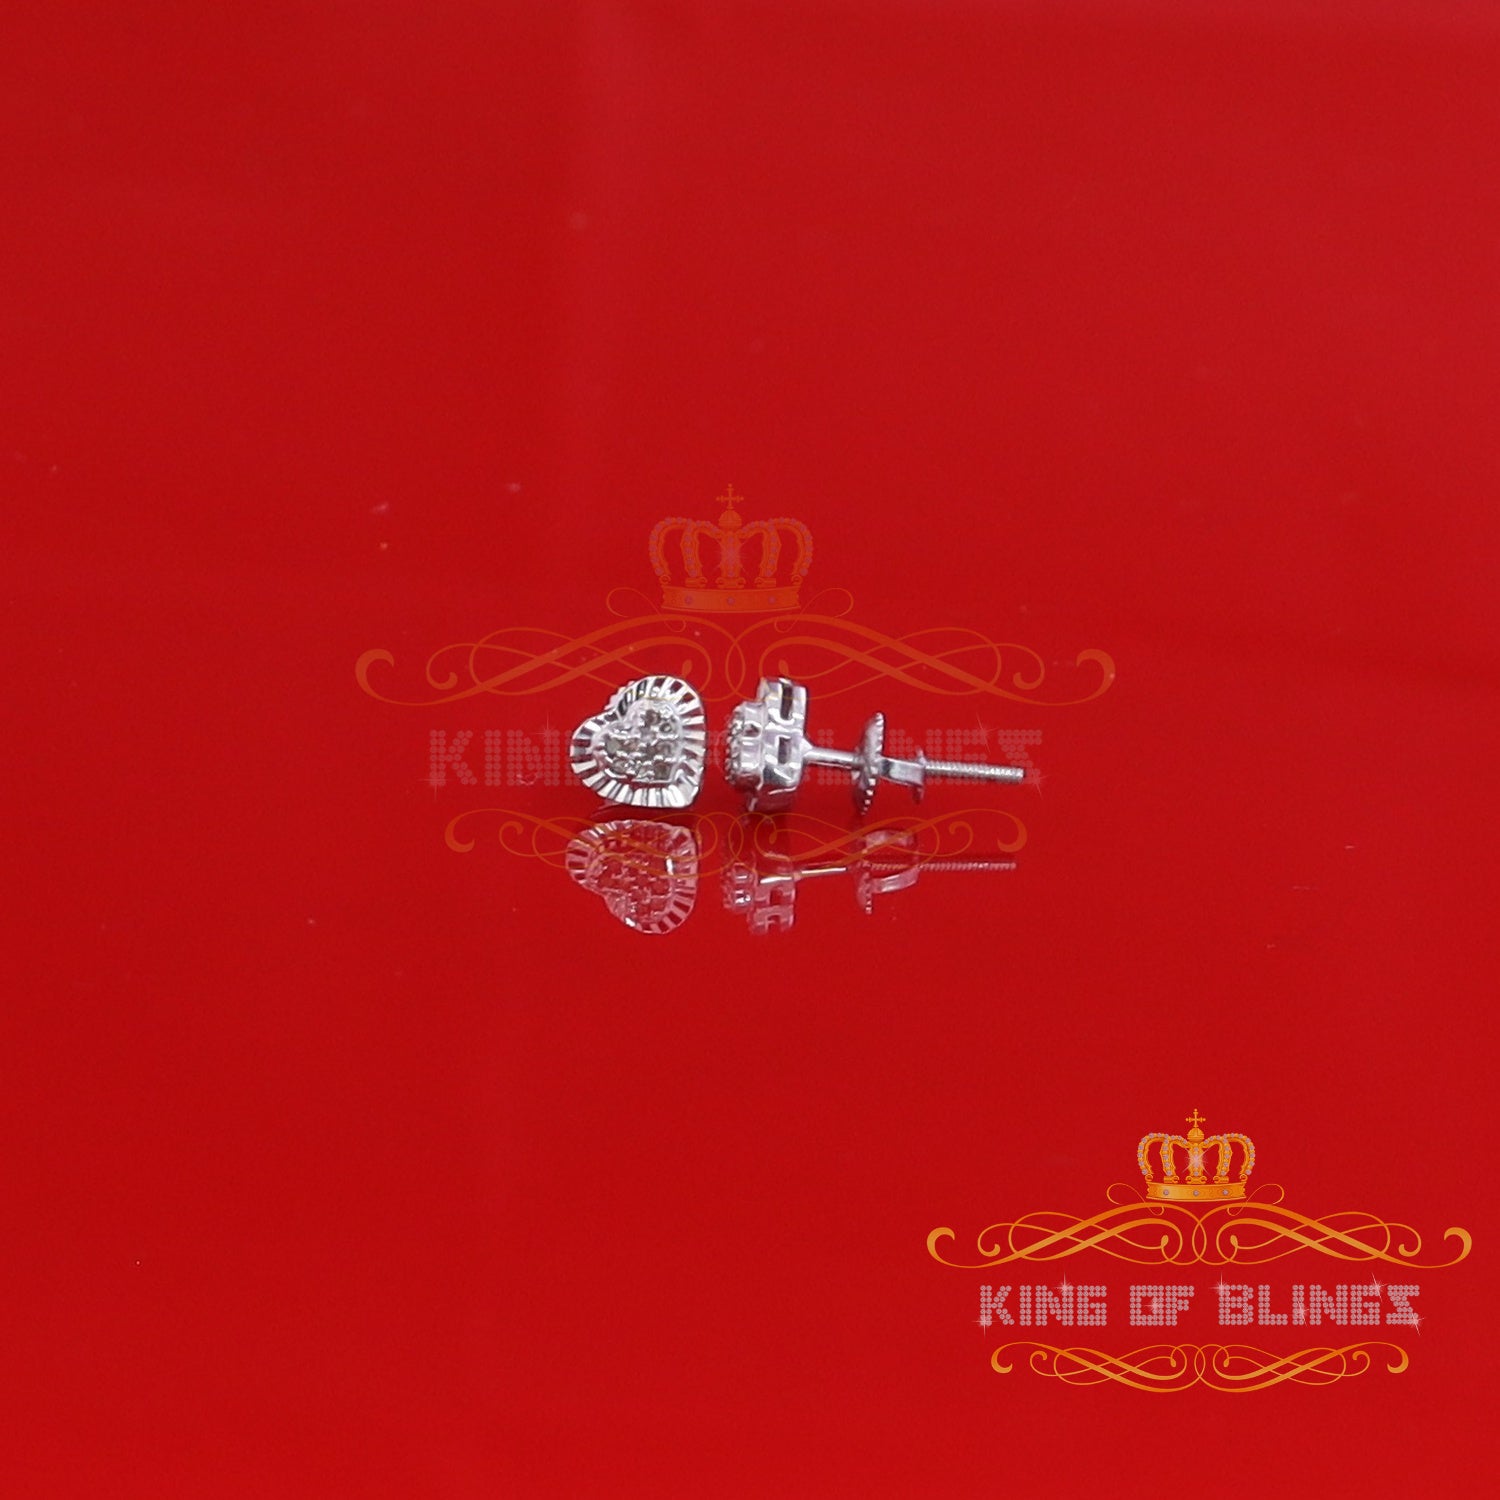 King Of Bling's Aretes Para Hombre Heart 925 White Silver 0.05ct Diamond Women's /Men's Earring KING OF BLINGS